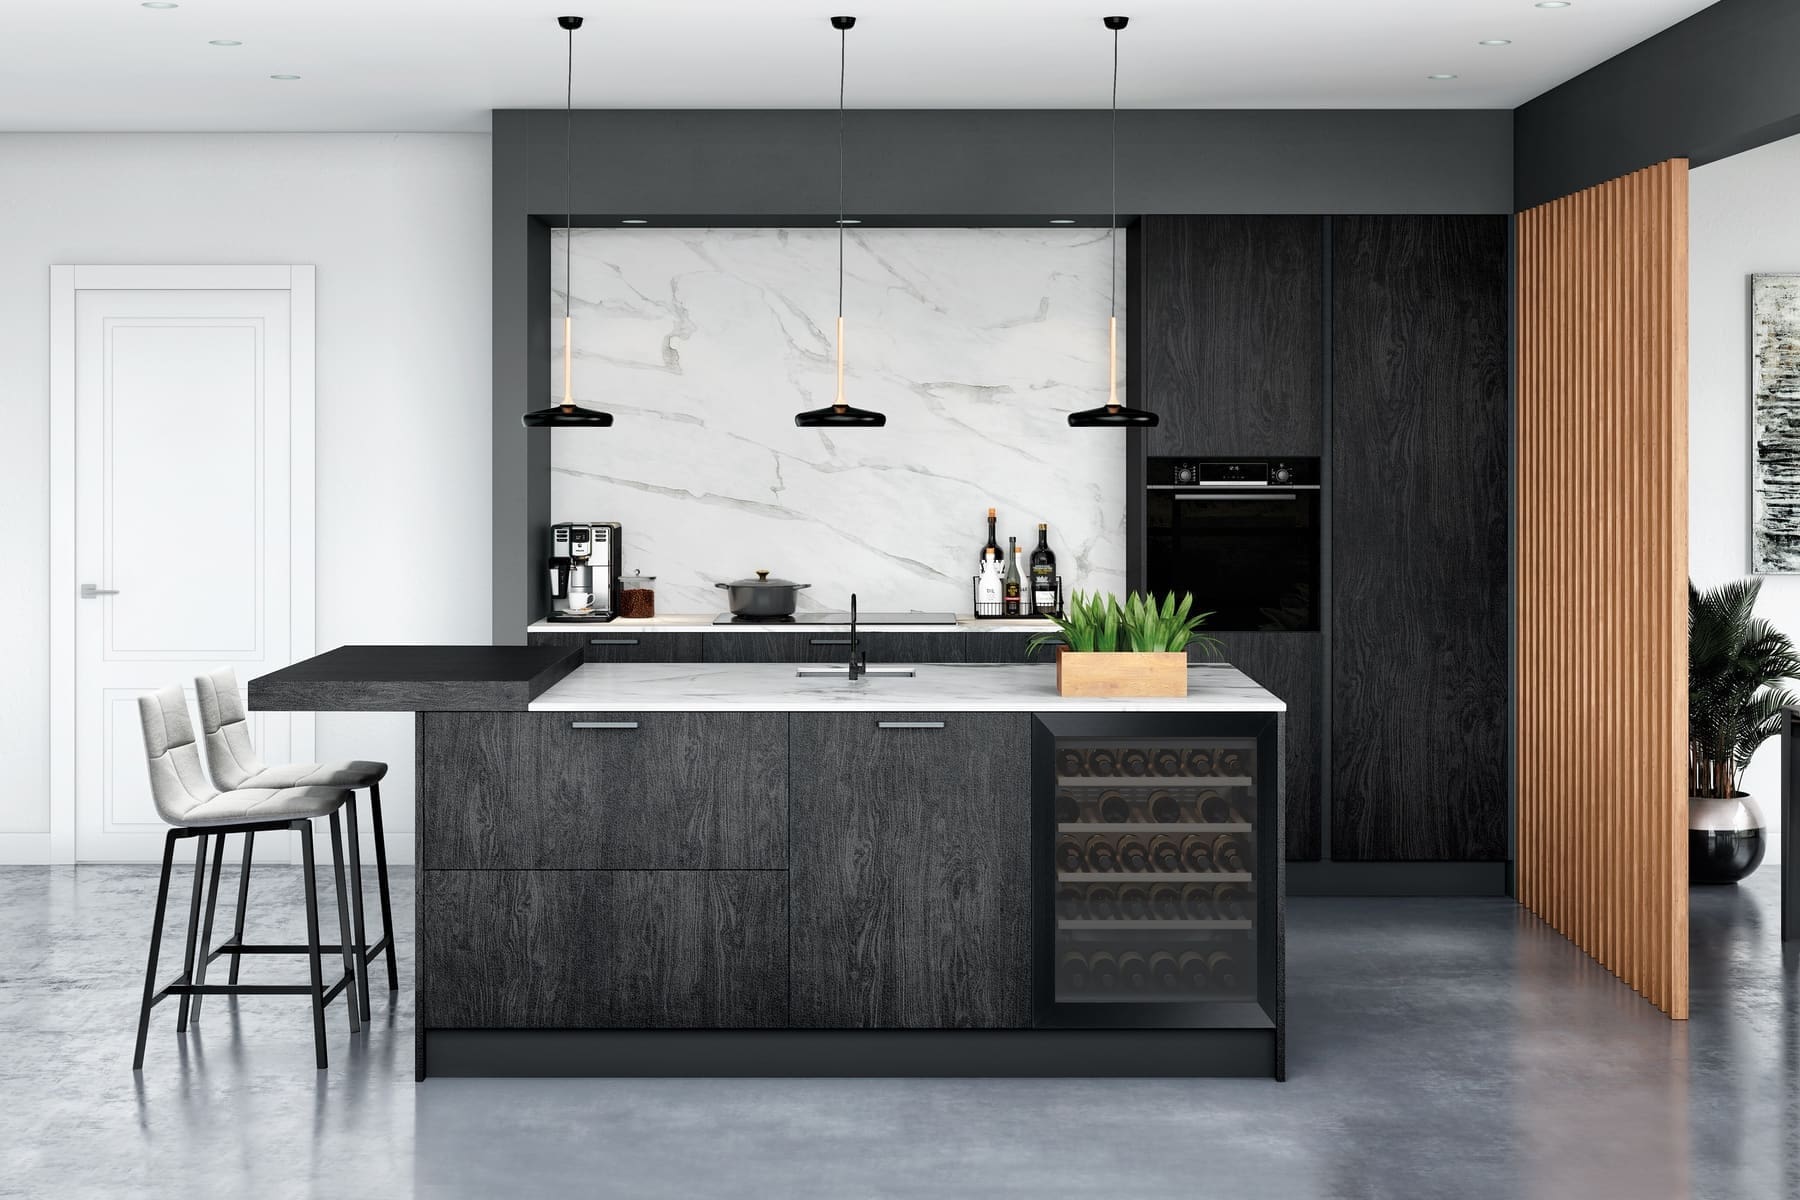 Rotpunkt Dark Wood Kitchen With Island | John Willox Kitchen Design, Ellon